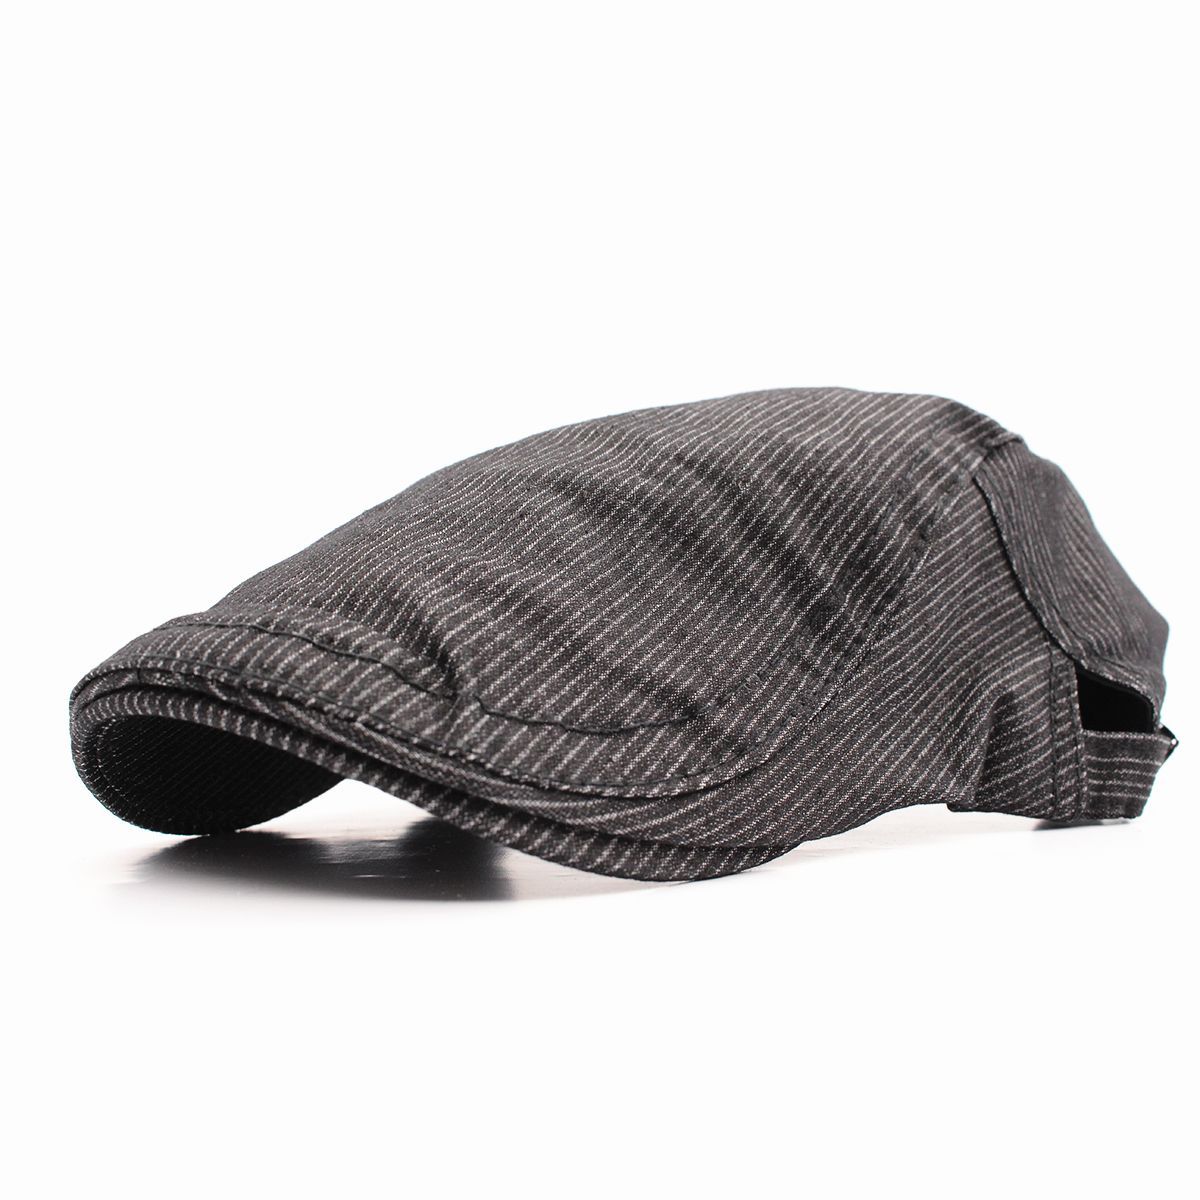 ハンチング帽子 ストライプ柄 綿キャップ 帽子 56~59cm HC172-1